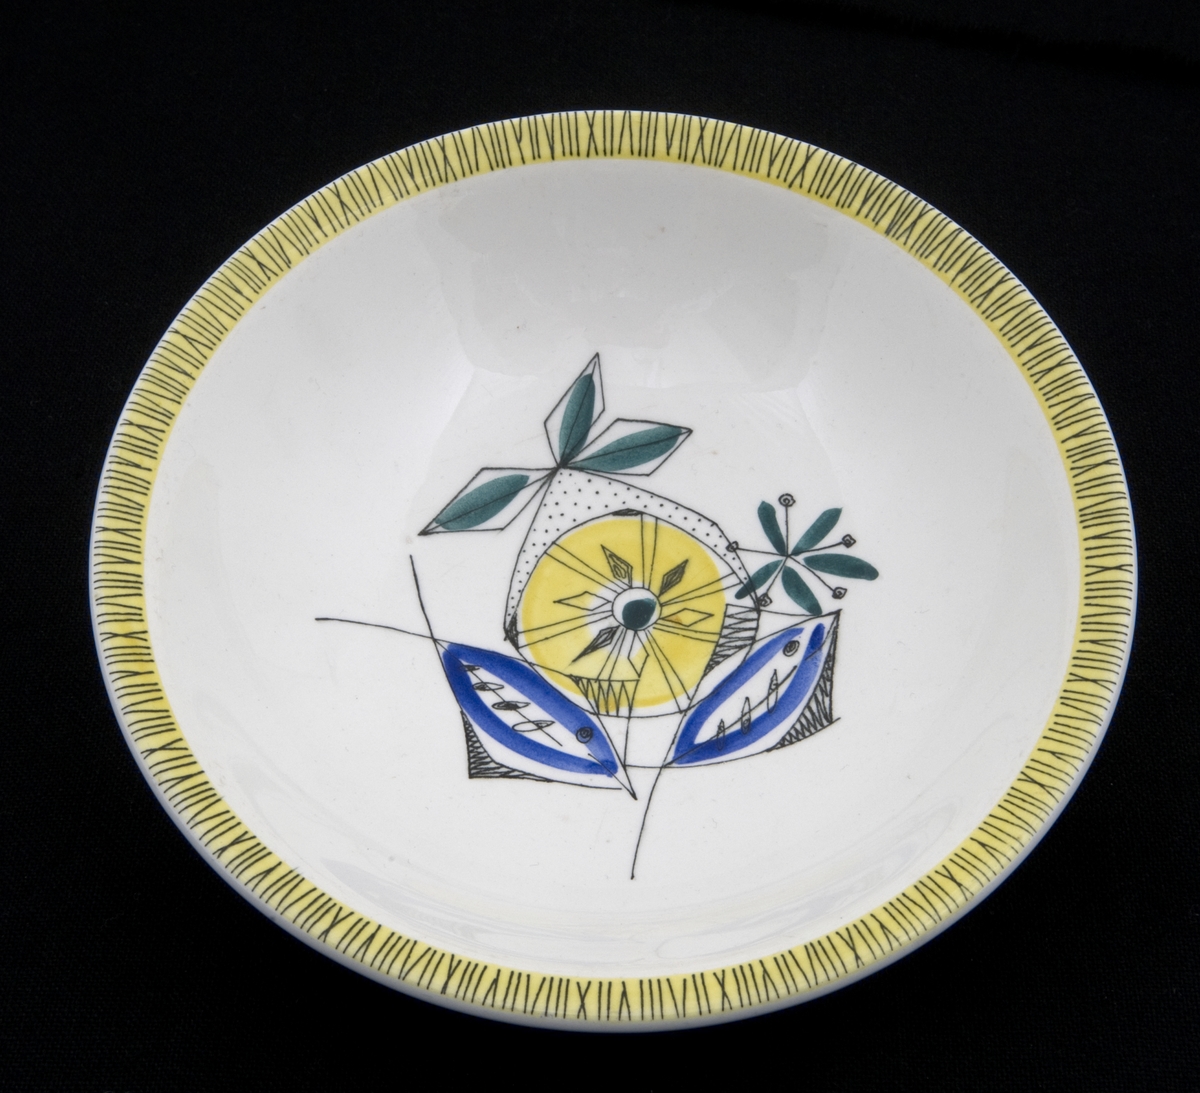 Dekorert med motiv av gul sitron, grønne blader og blå fisker. Kranset med bambusmotiv av svarte streker på gul bakgrunn.